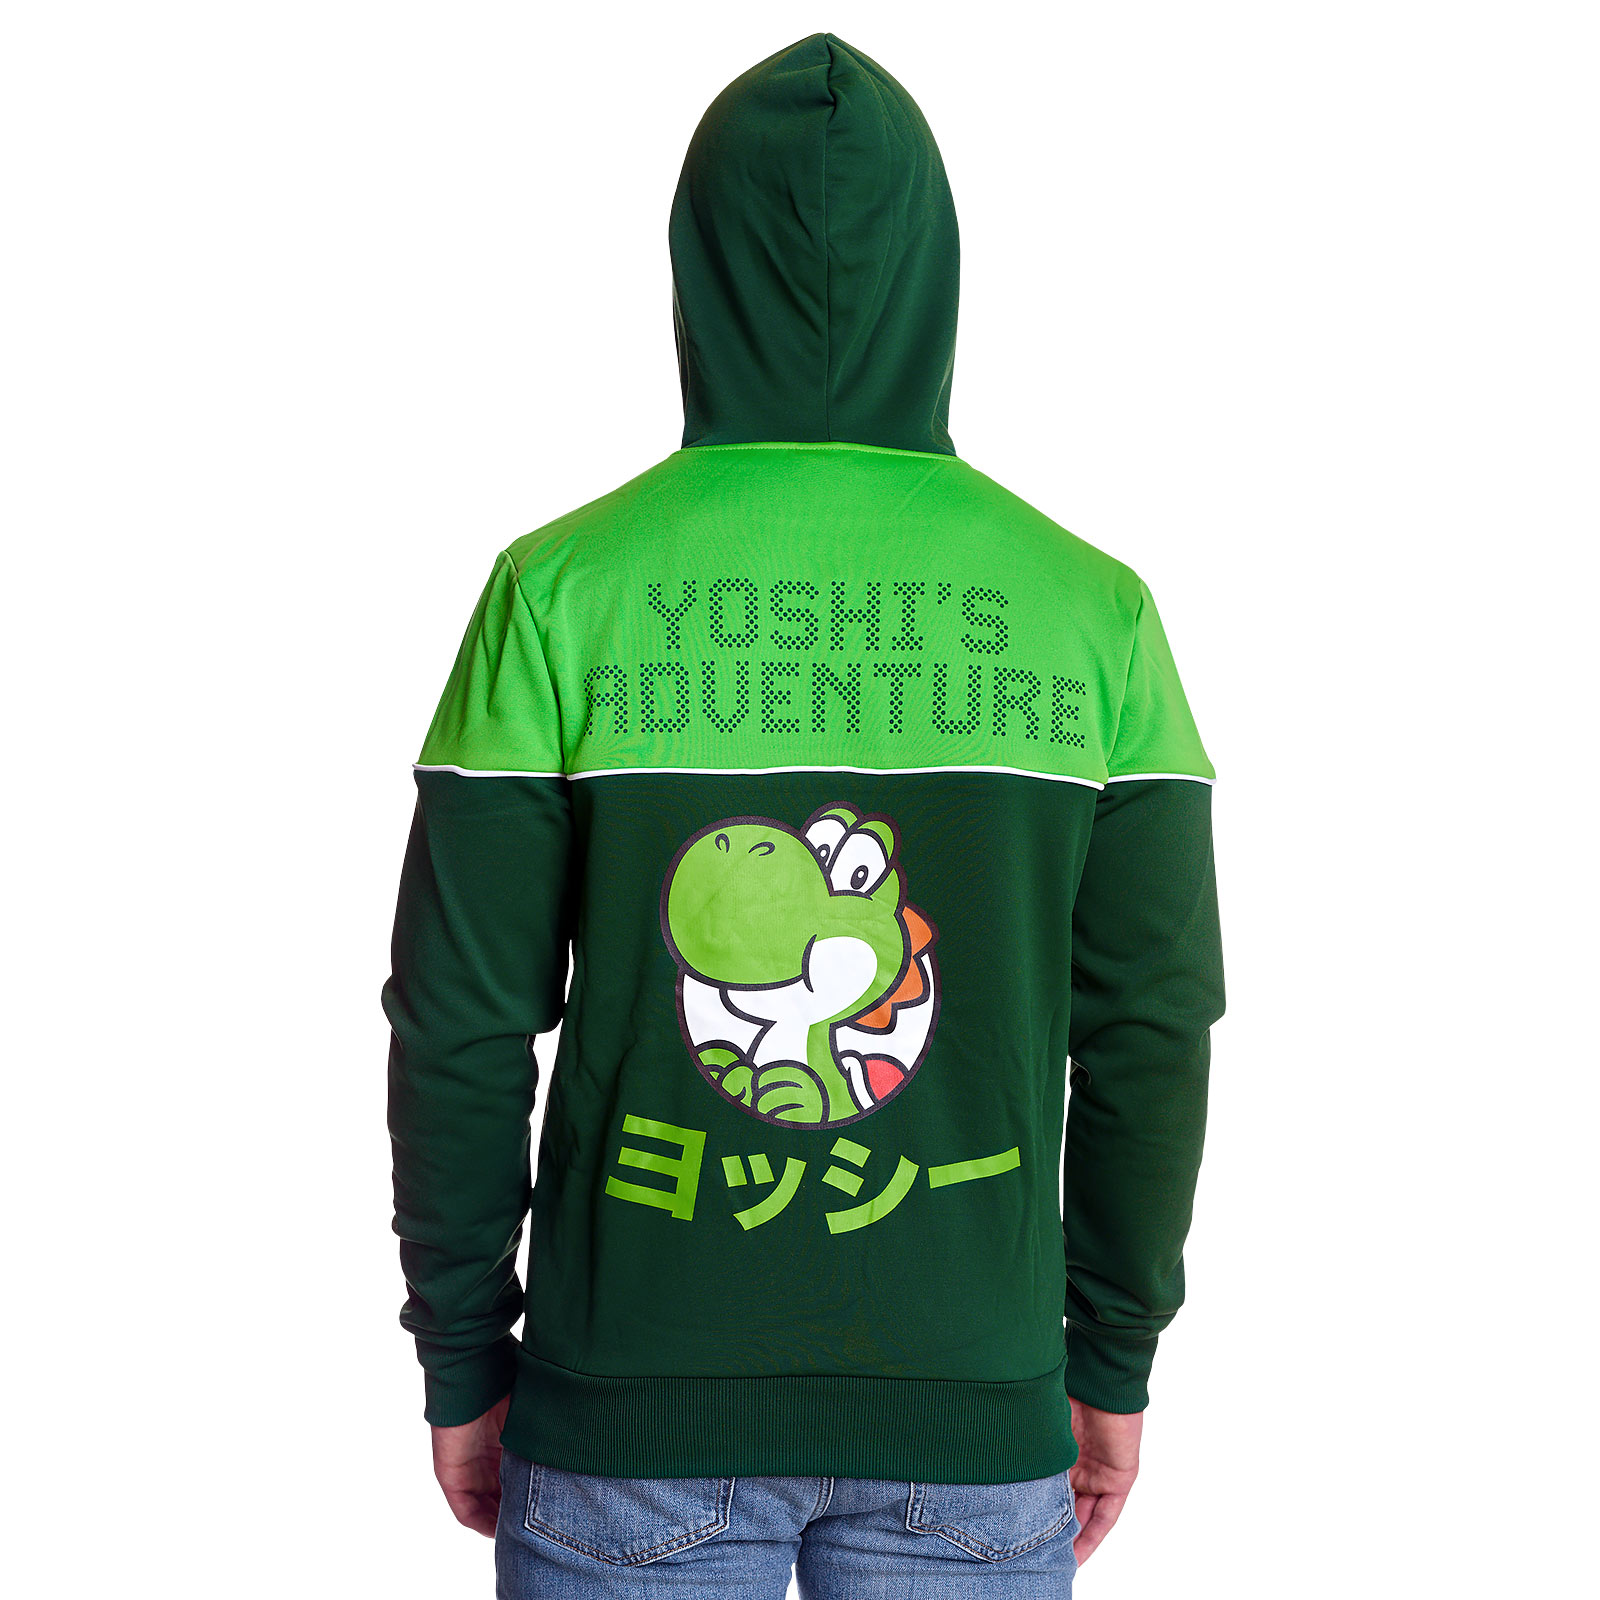 Super Mario - Yoshi Hoodie